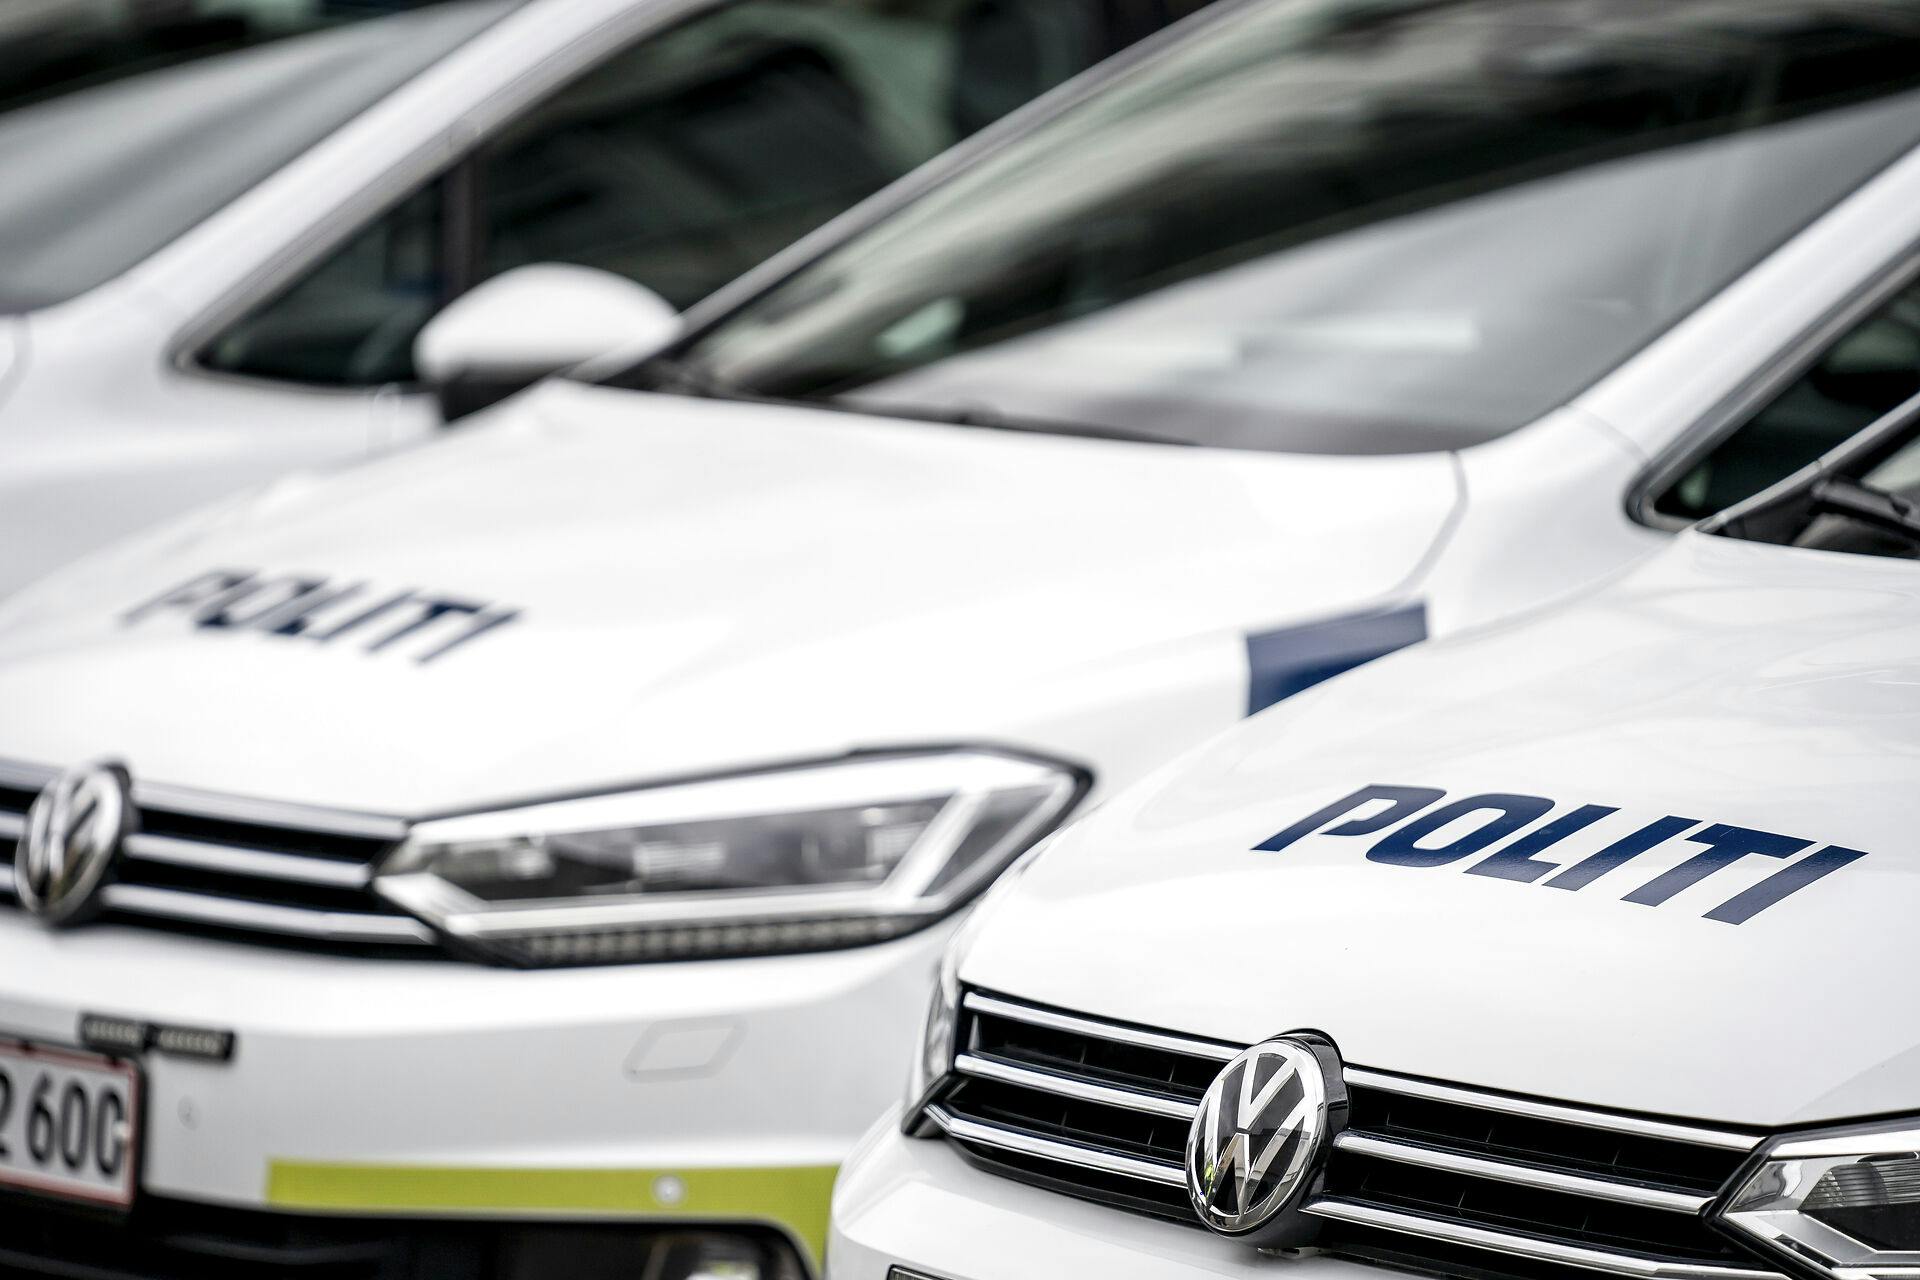 Politiet har fået 40 anmeldelser om bilindbrud i Aarhus på under to døgn